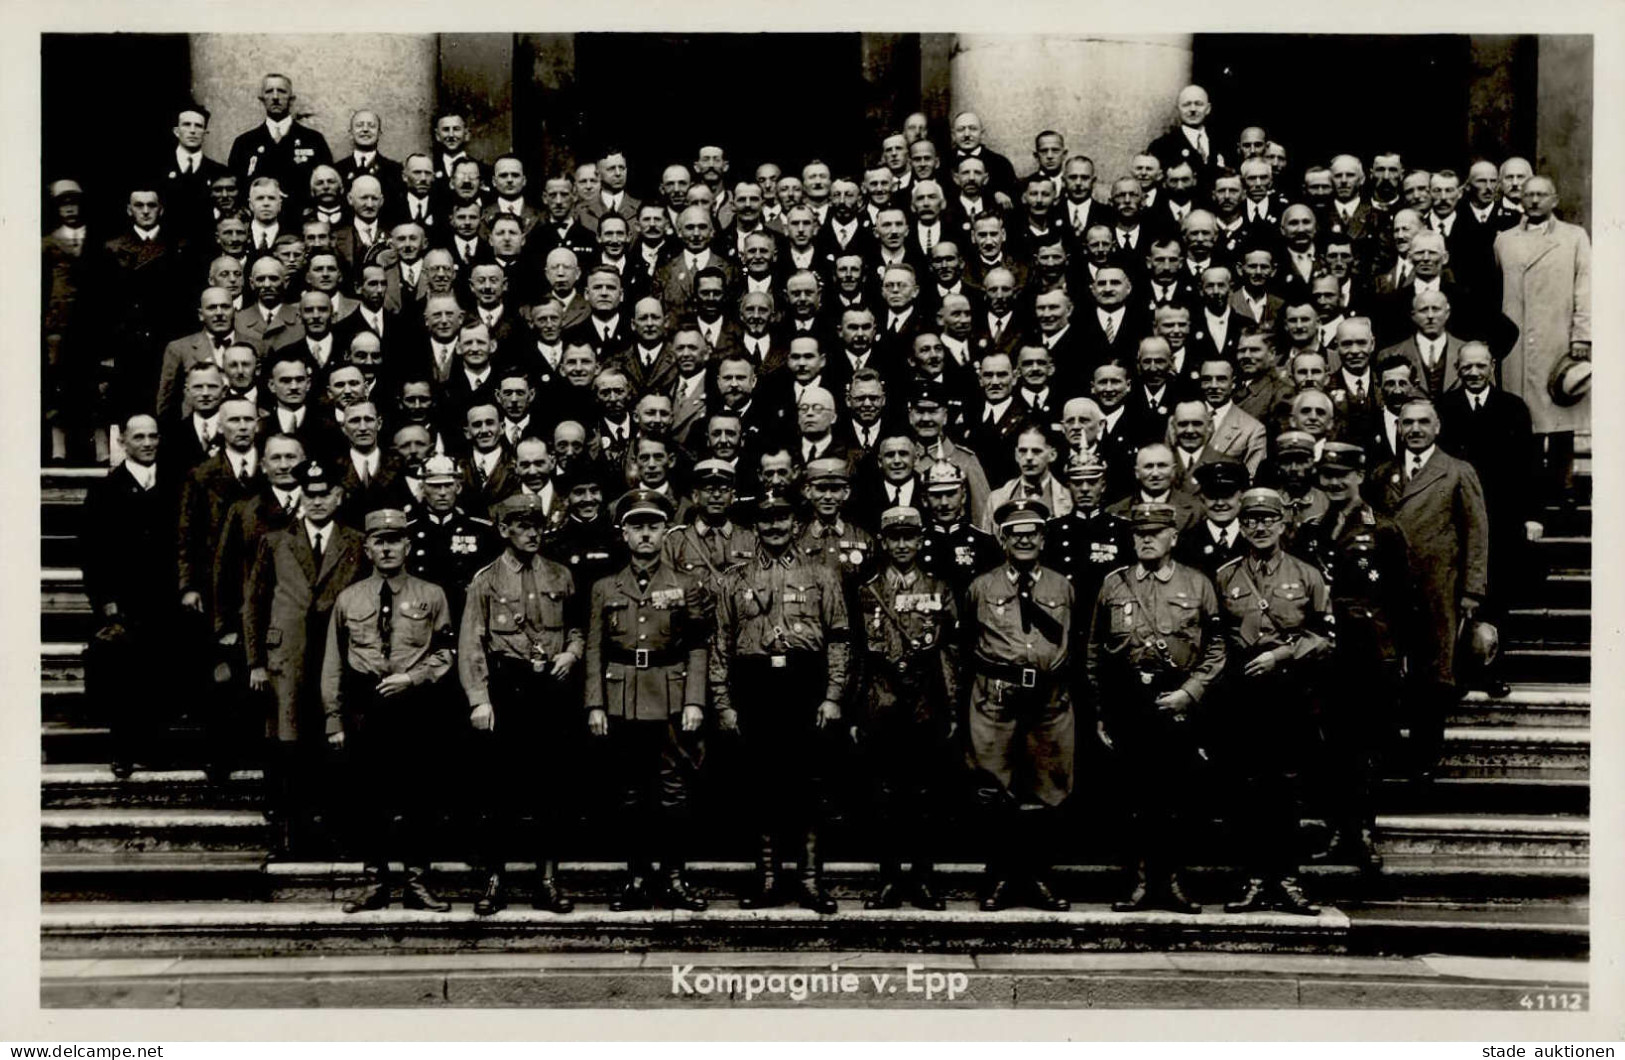 Zwischenkriegszeit Badonviller Feier 1934 8. Kompagnie V. Epp Foto-AK I-II - Other Wars